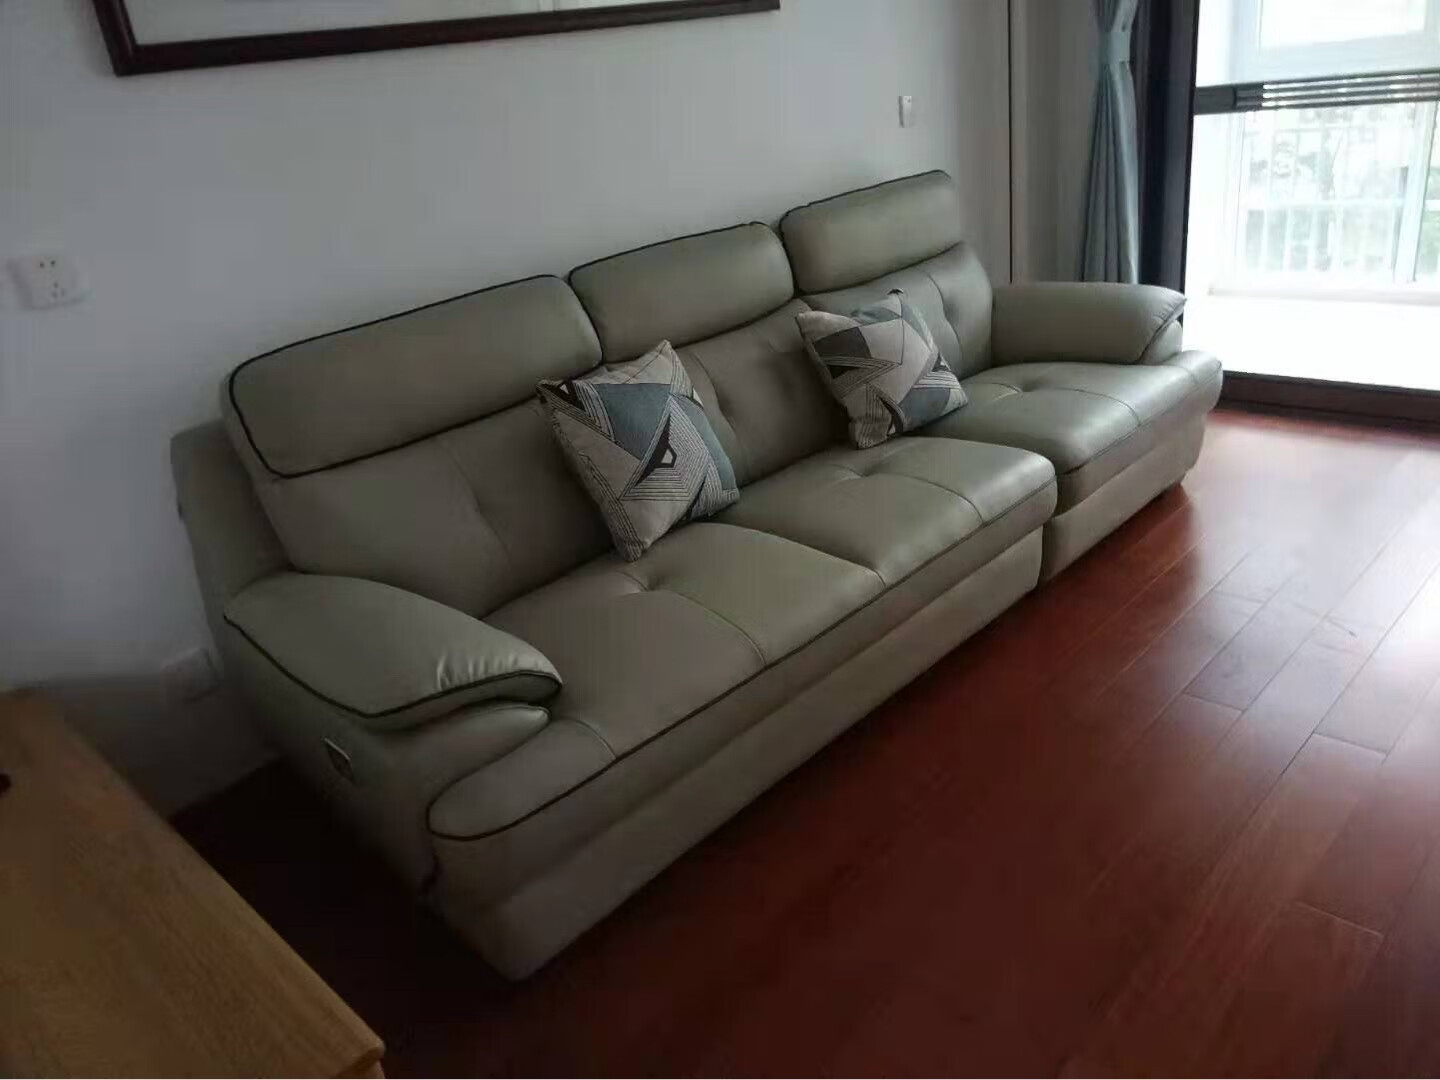 沙发收到了 质量很好 软硬适中 坐着很舒服 颜色也很好看 非常喜欢 大品牌值得信赖